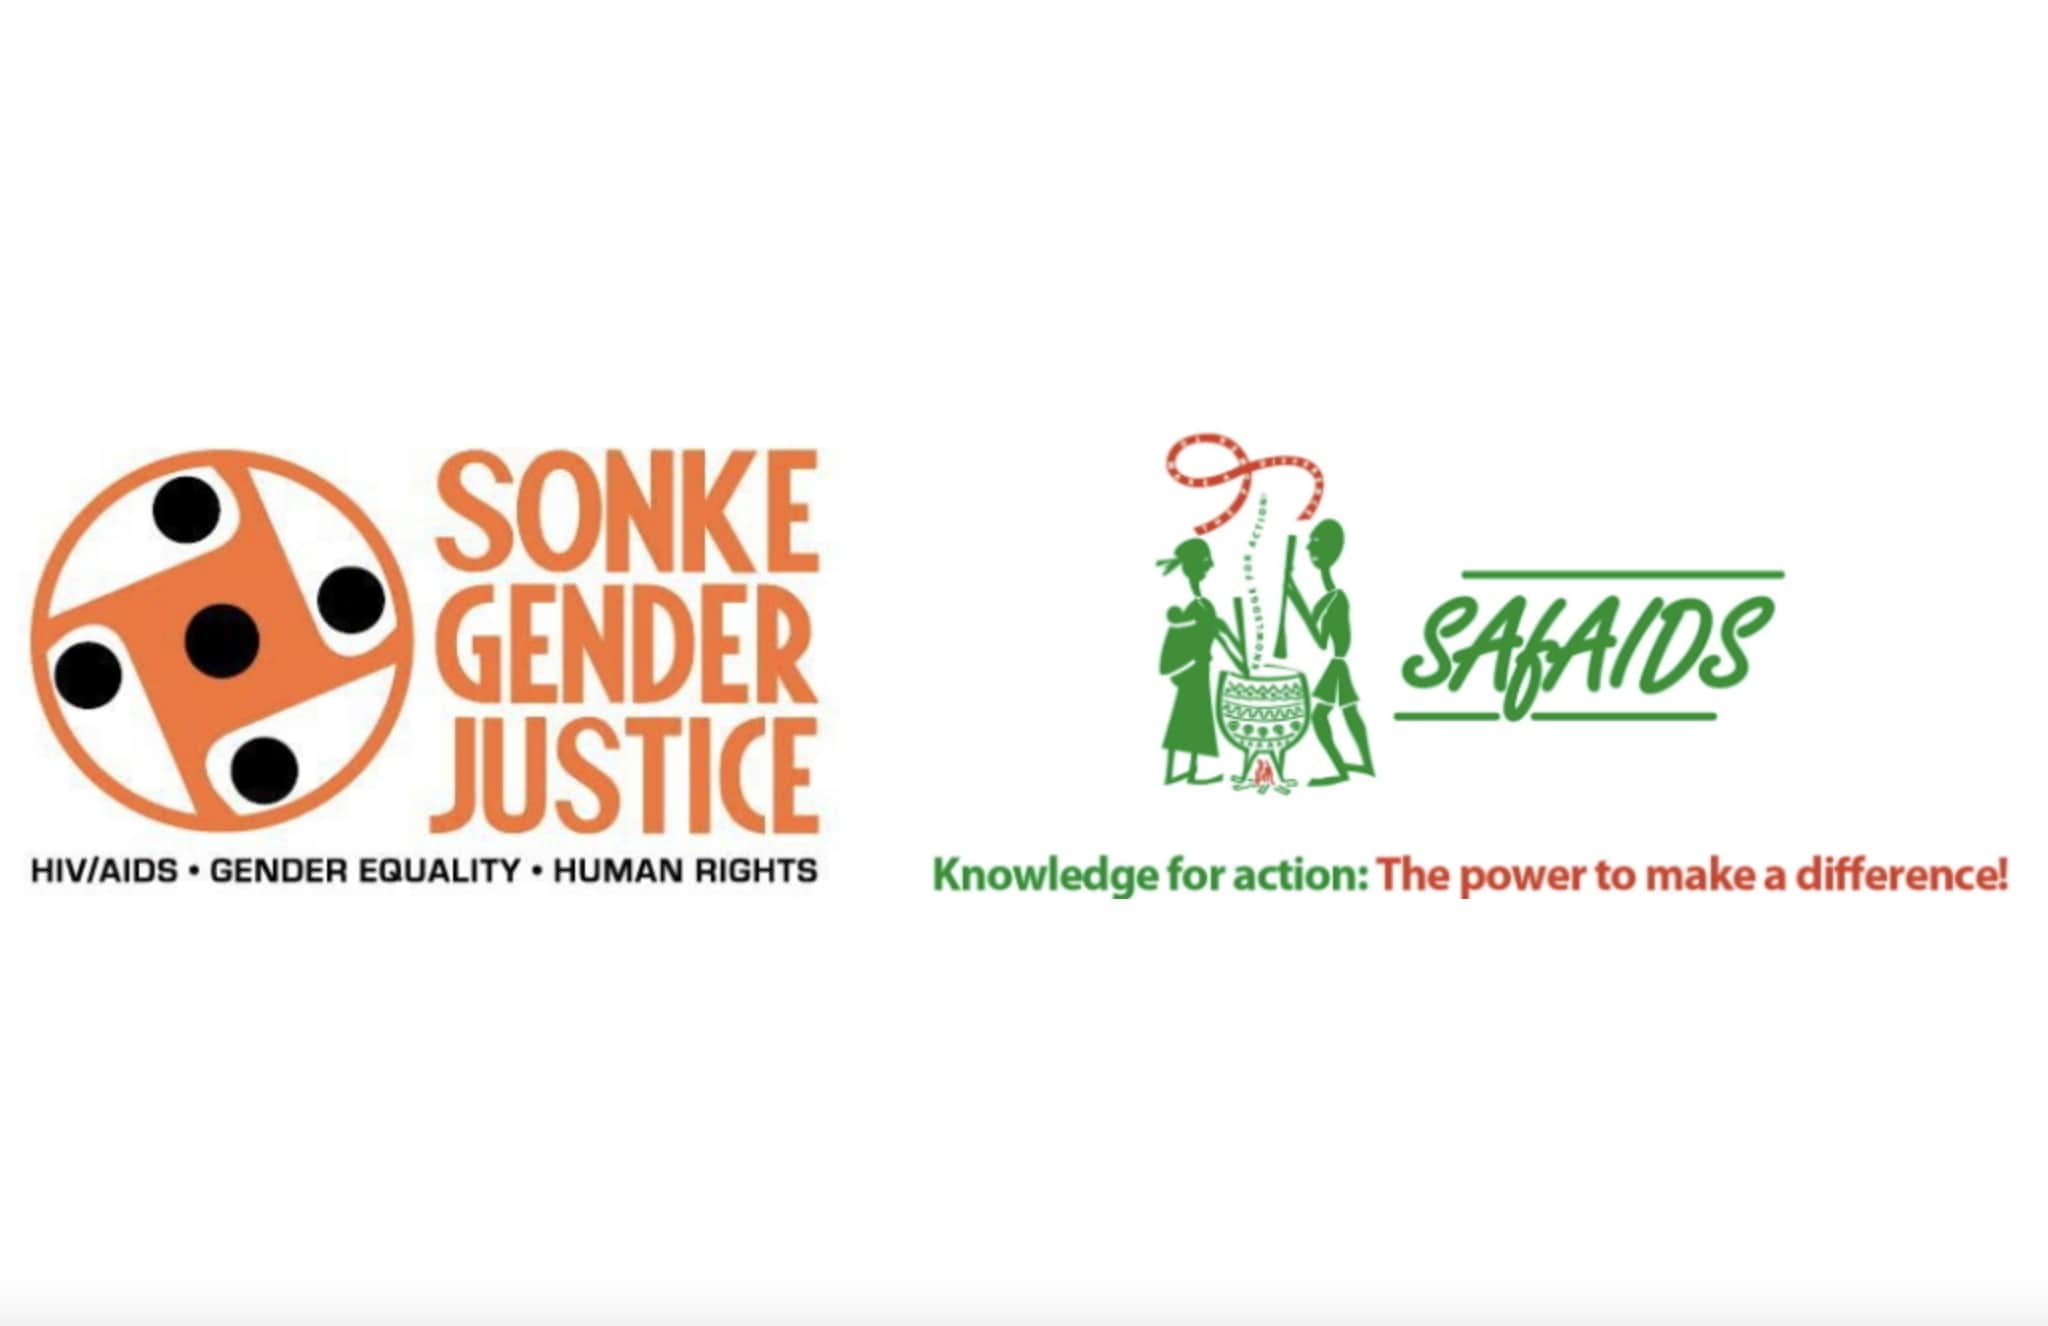 Snoke Gender Justice & SAfAIDS